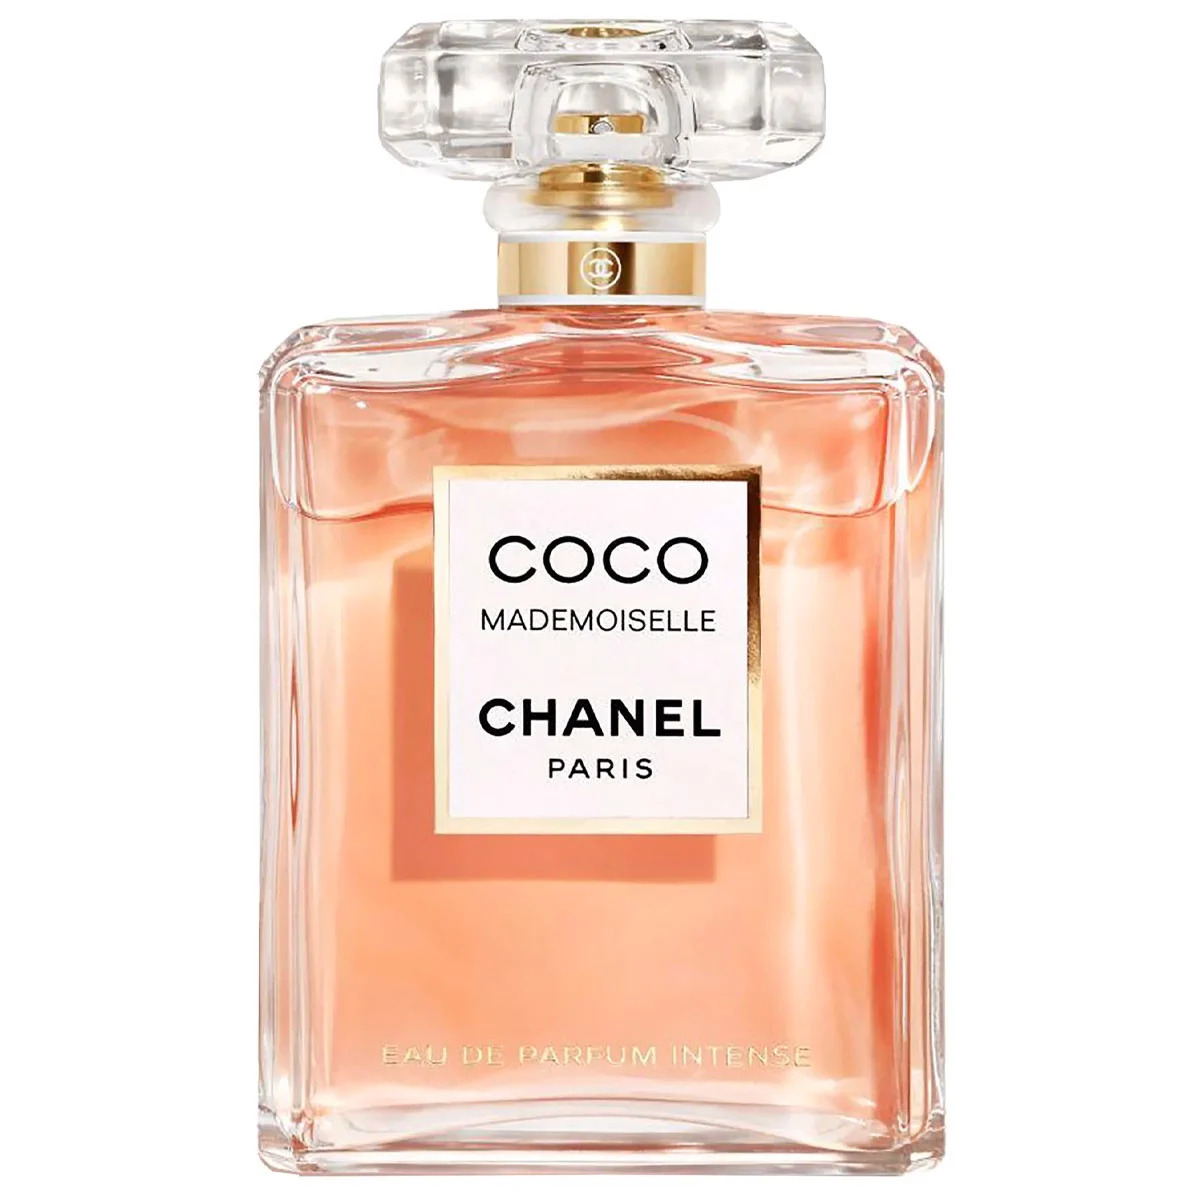 Chanel Coco Mademoiselle Eau De Parfum Intense